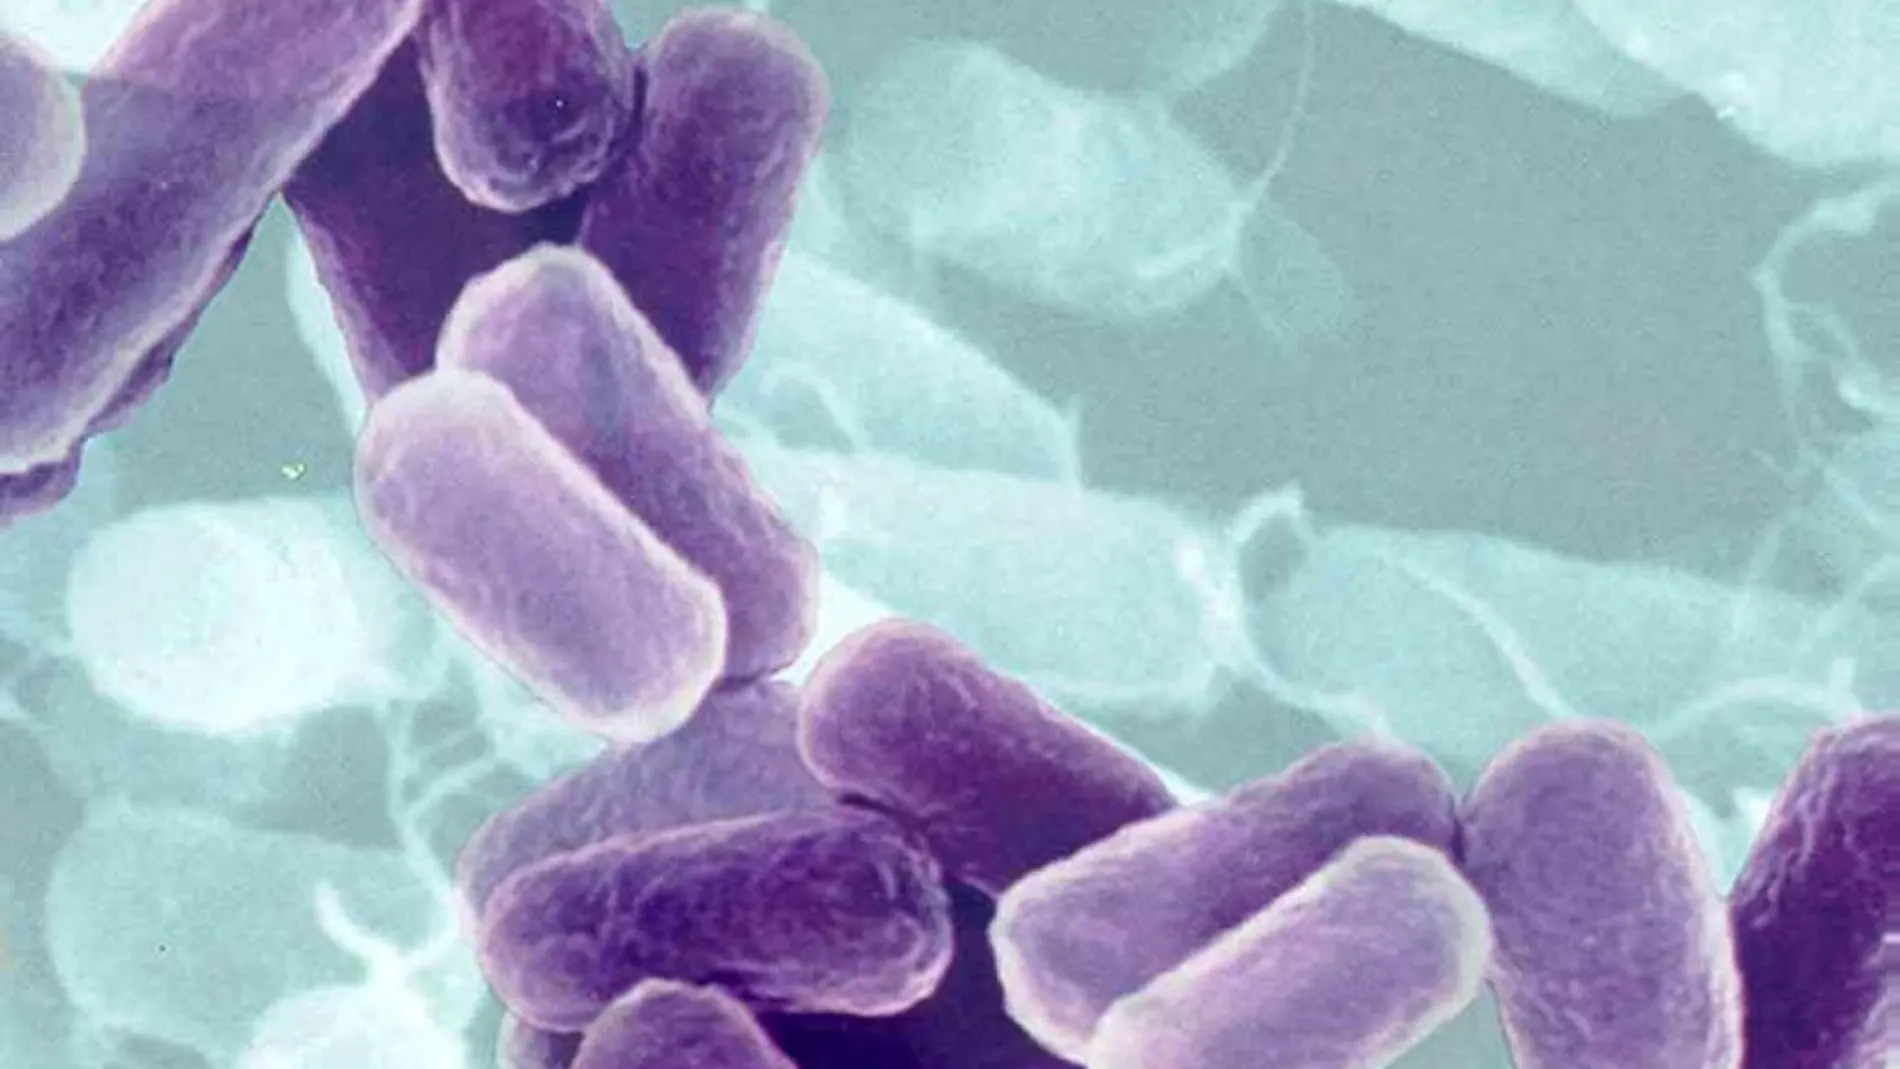 Una de las bacterias modificadas pertenece a la cepa E. coli